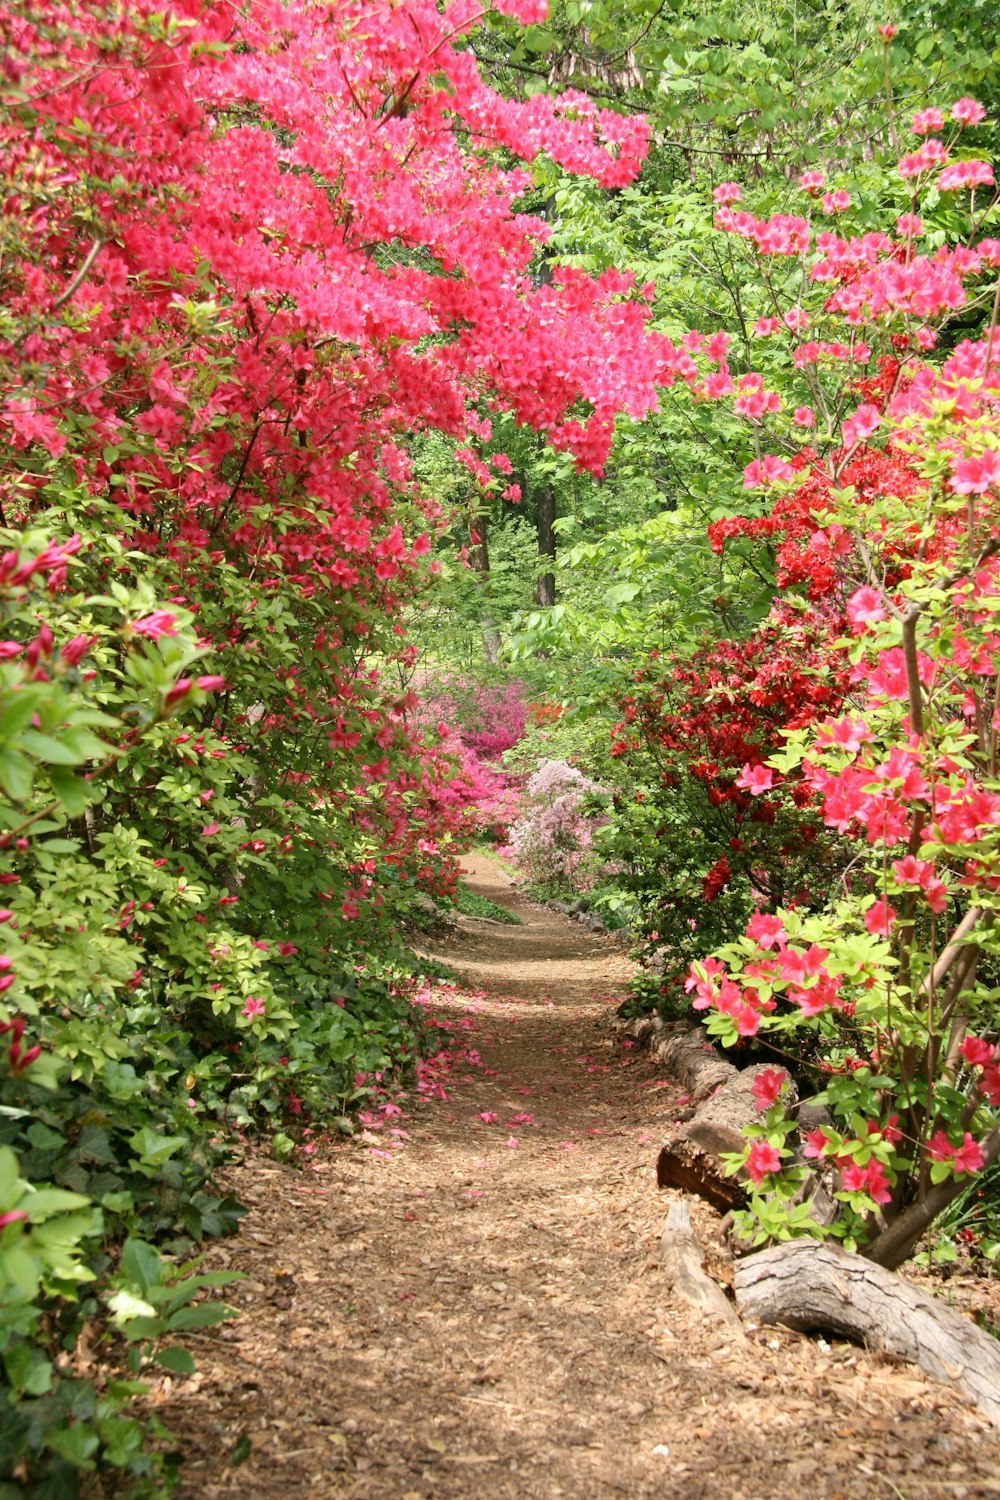 Un camino de tierra rodeado de árboles y flores